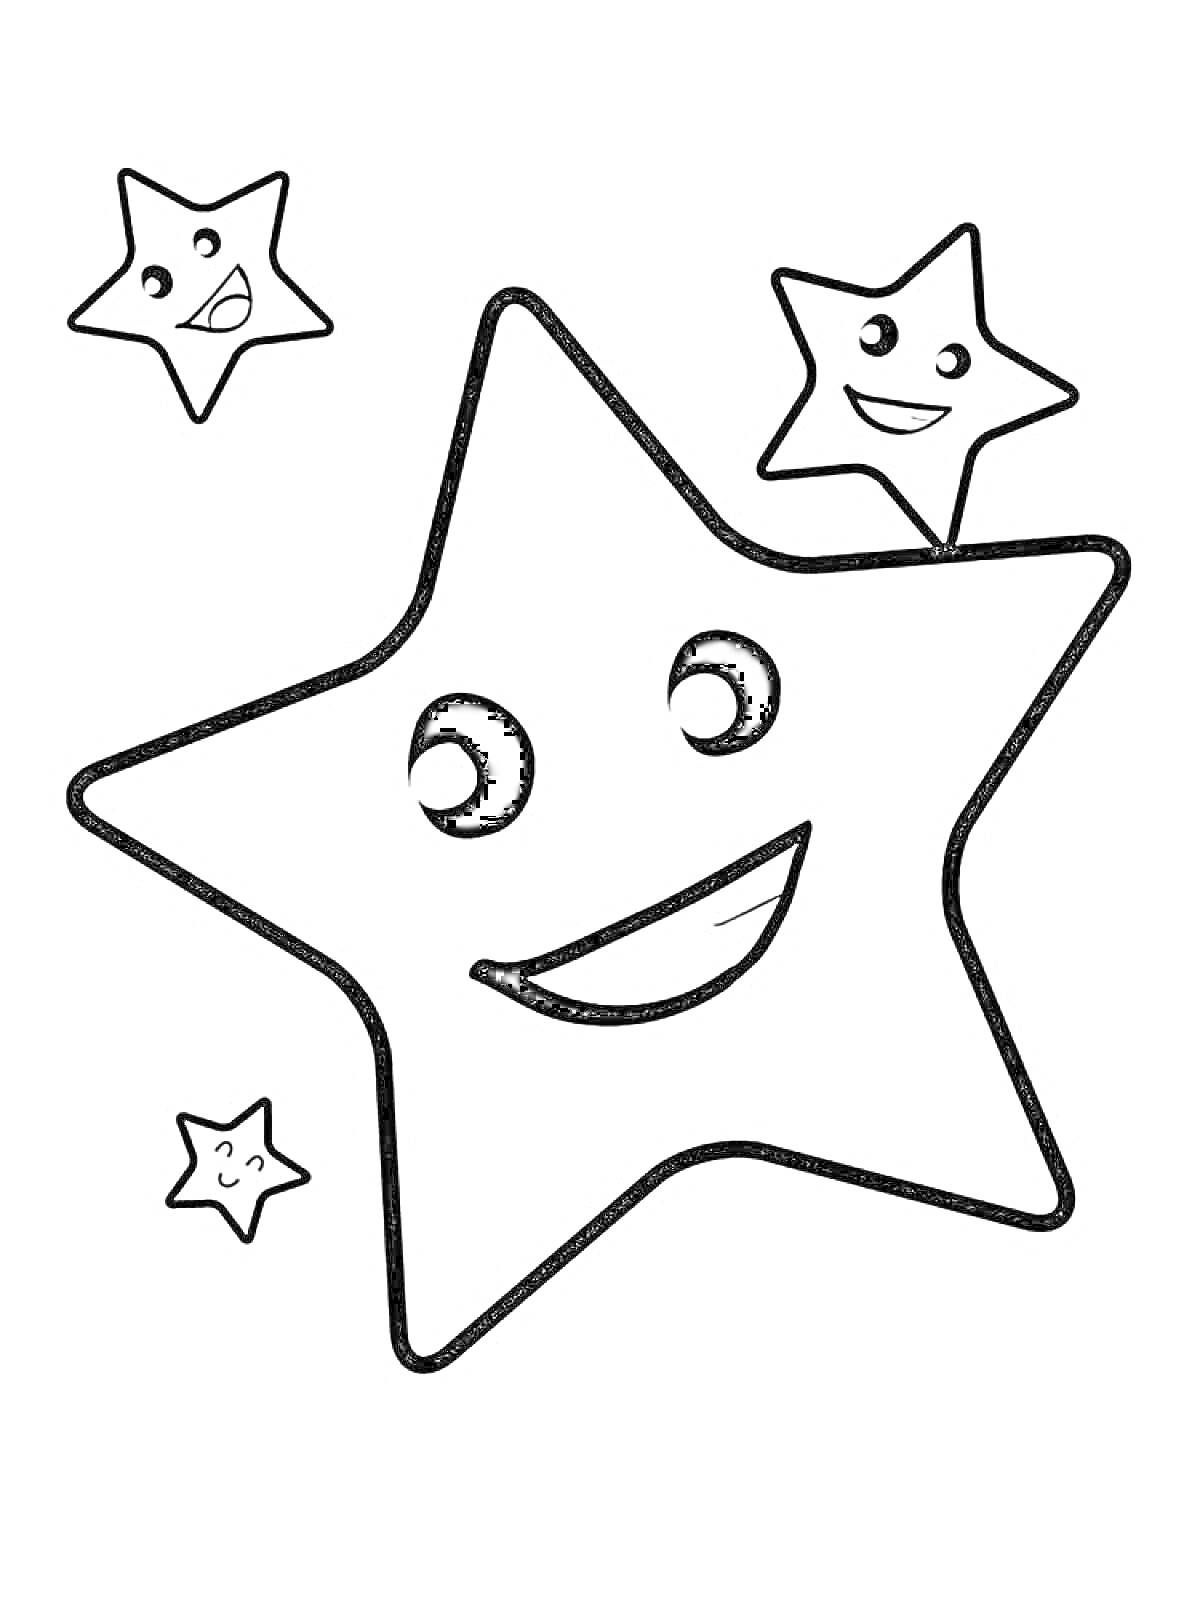 Звездочки с улыбками, три маленькие звезды и одна большая звезда